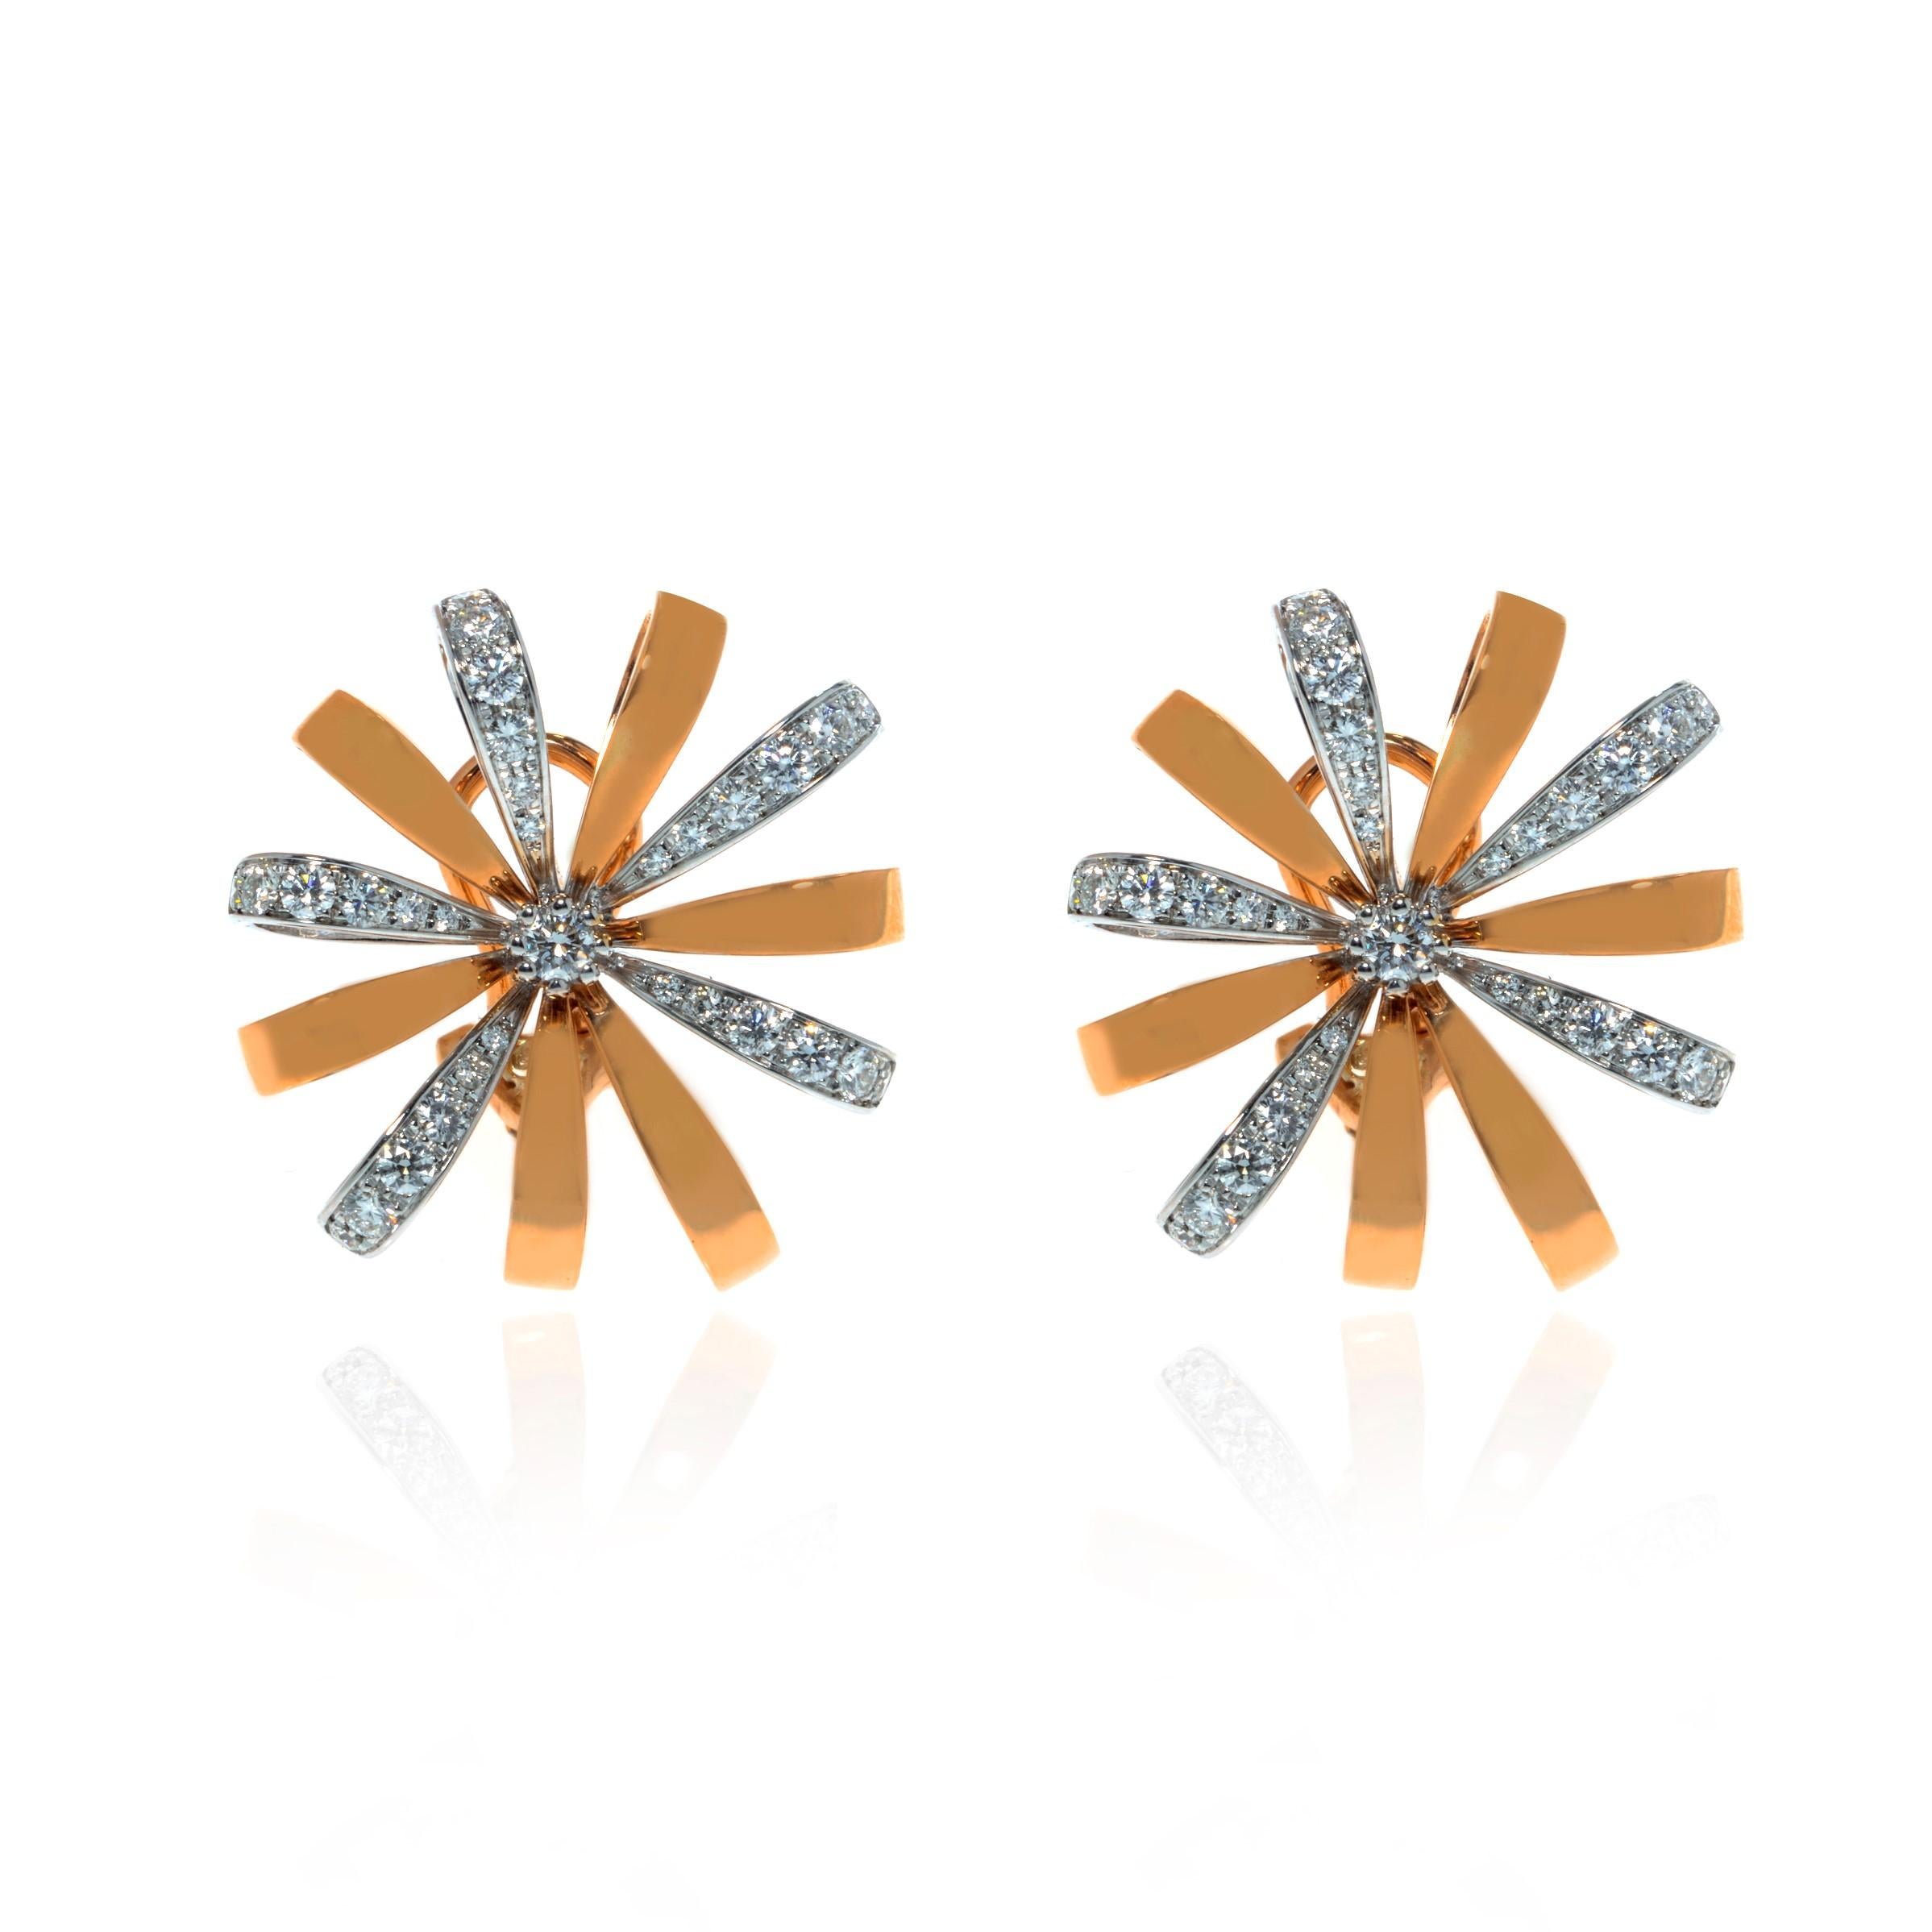 Dieses wunderschöne Paar Nachlass-Ohrringe ist aus massivem 18-karätigem Rosé- und Weißgold gefertigt und hat die Form von wunderschönen Blumen. Das Gesamtgewicht der Diamanten des Paares beträgt 1,31 Karat mit VVS-Reinheit und G-Farbe. Jeder